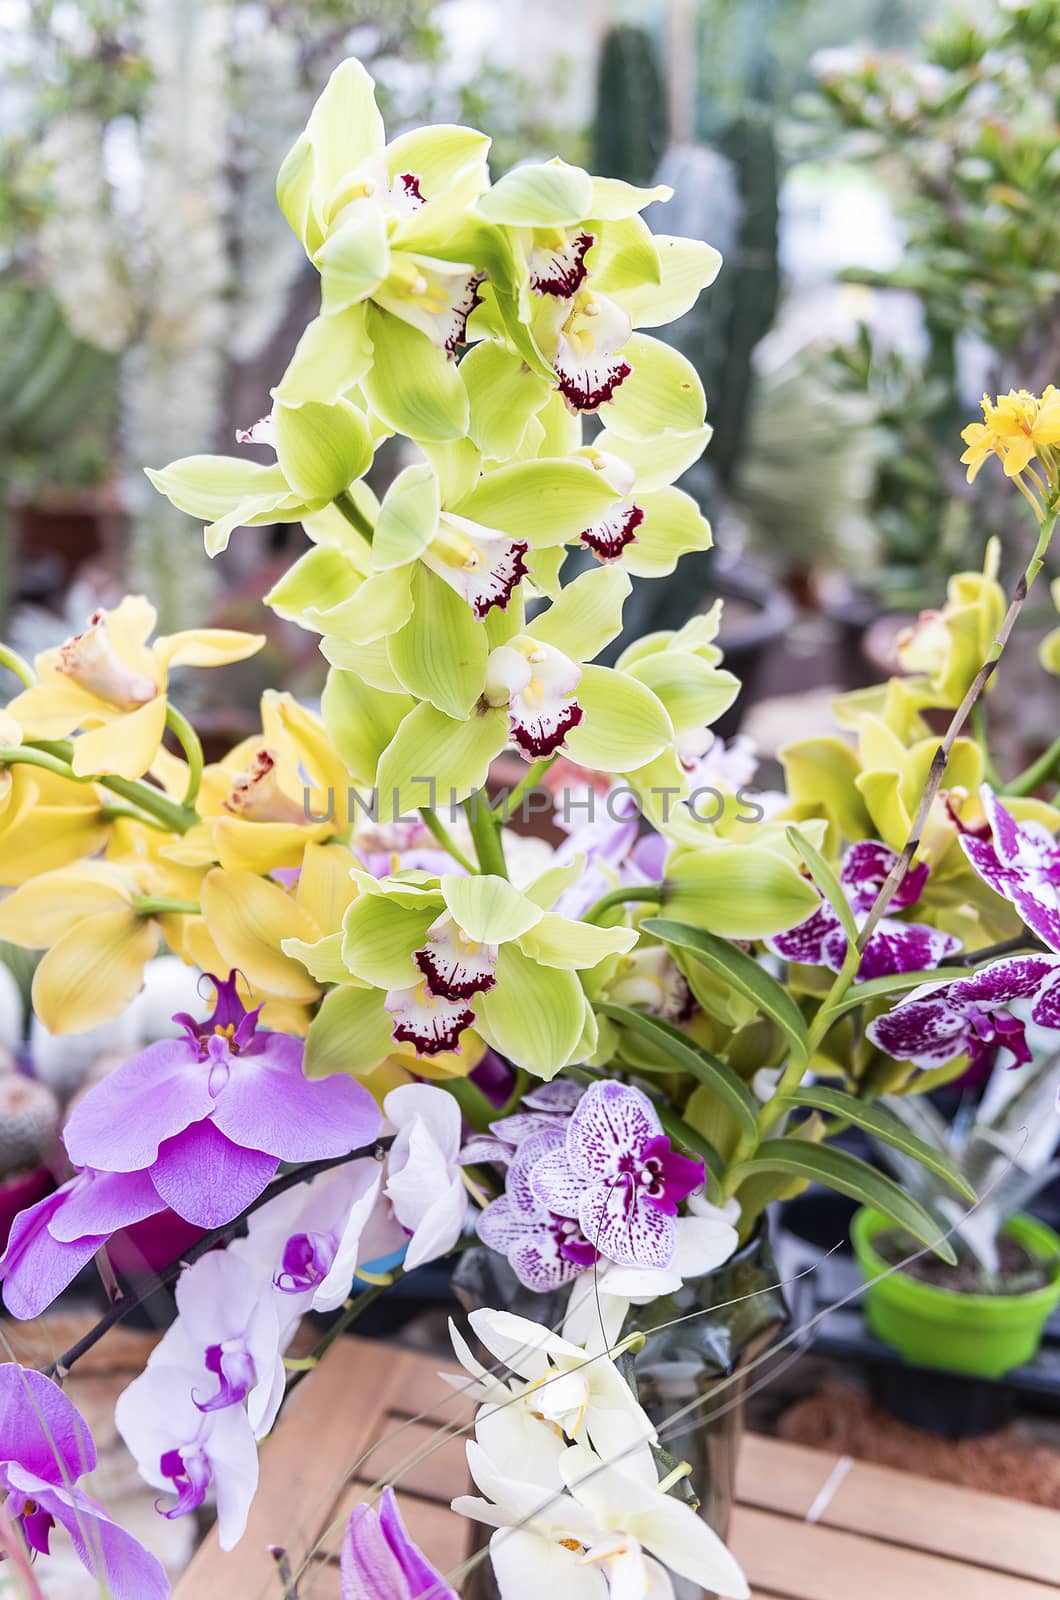 Beautiful colorful mix of phalaenopsis orchids by marcorubino